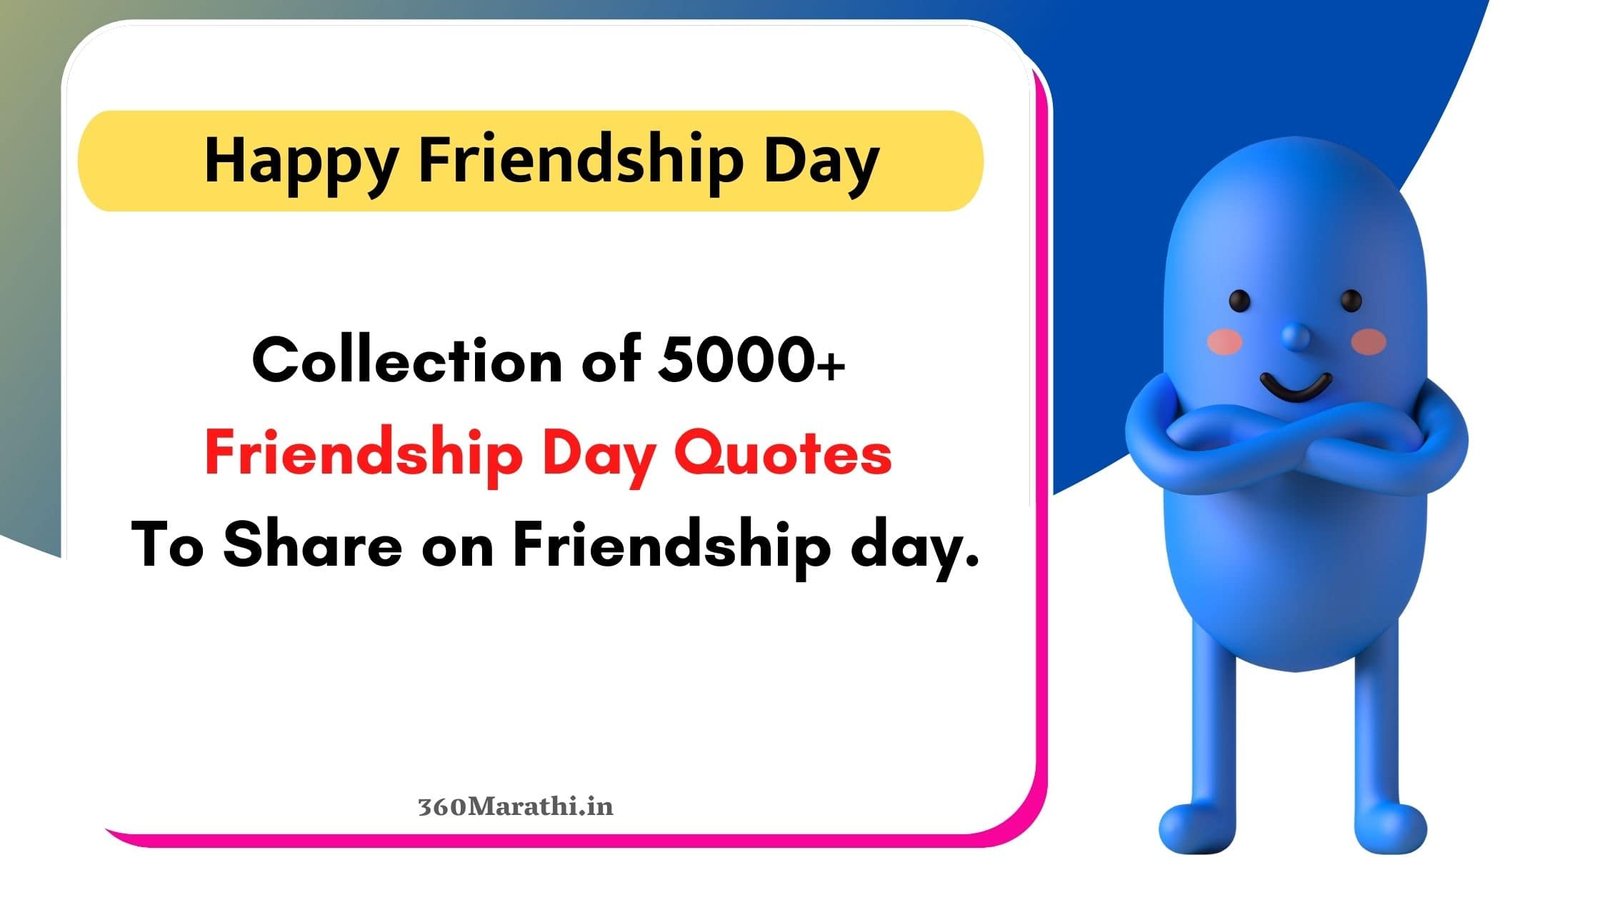 Friendship Day 2021